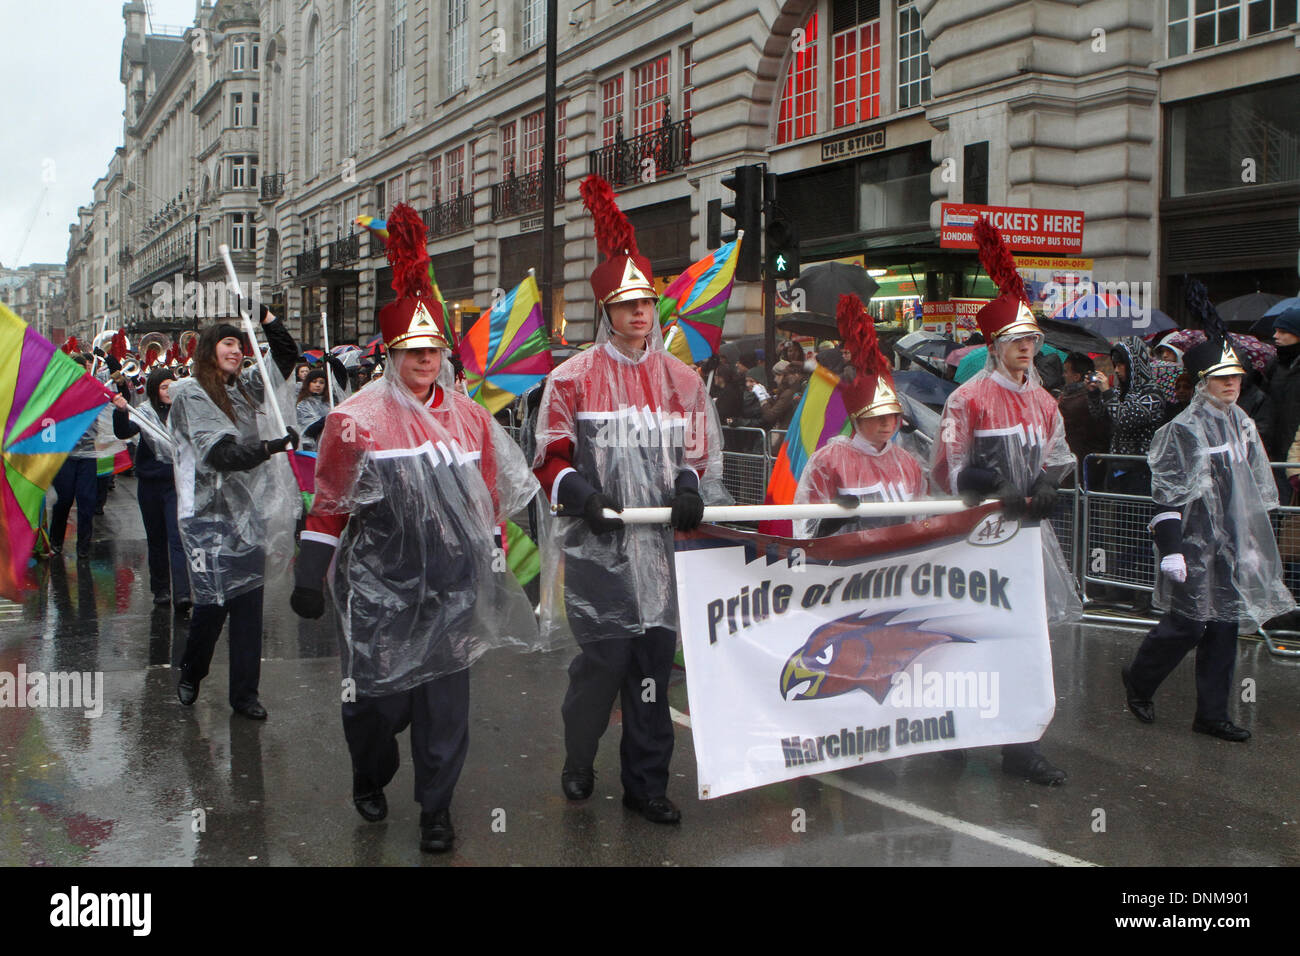 Londres, Reino Unido, 1 de enero de 2014,el orgullo de Mill Creek Marching Band en Londres el día de Año Nuevo de 2014 Desfile de crédito: Keith Larby/Alamy Live News Foto de stock